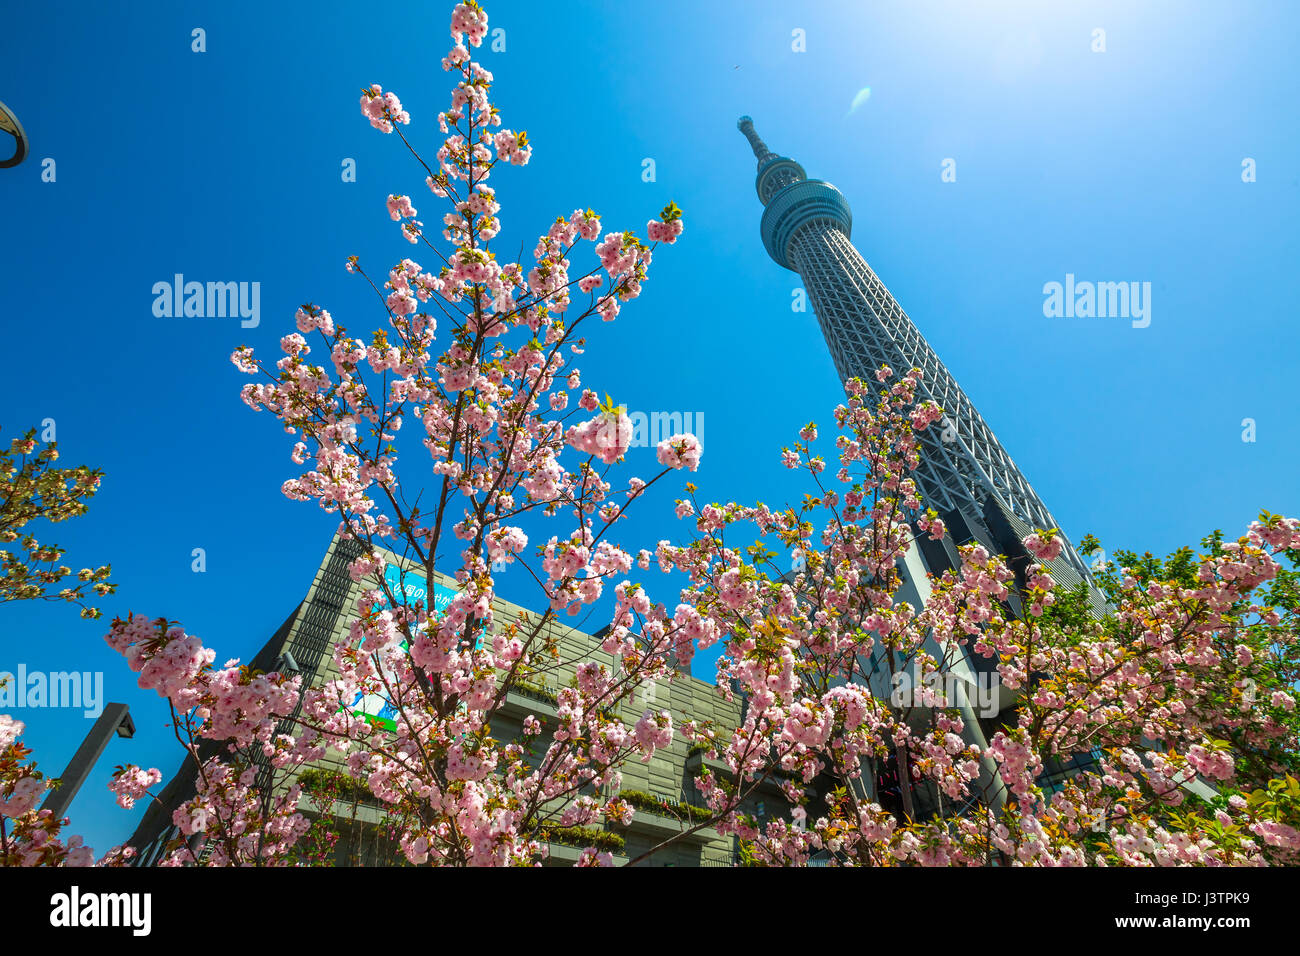 Tokyo, Giappone - 19 Aprile 2017: Tokyo Skytree con fiori di ciliegio in piena fioritura. Tokyo Skytree è la torre più alte del mondo, la radiodiffusione e obs Foto Stock